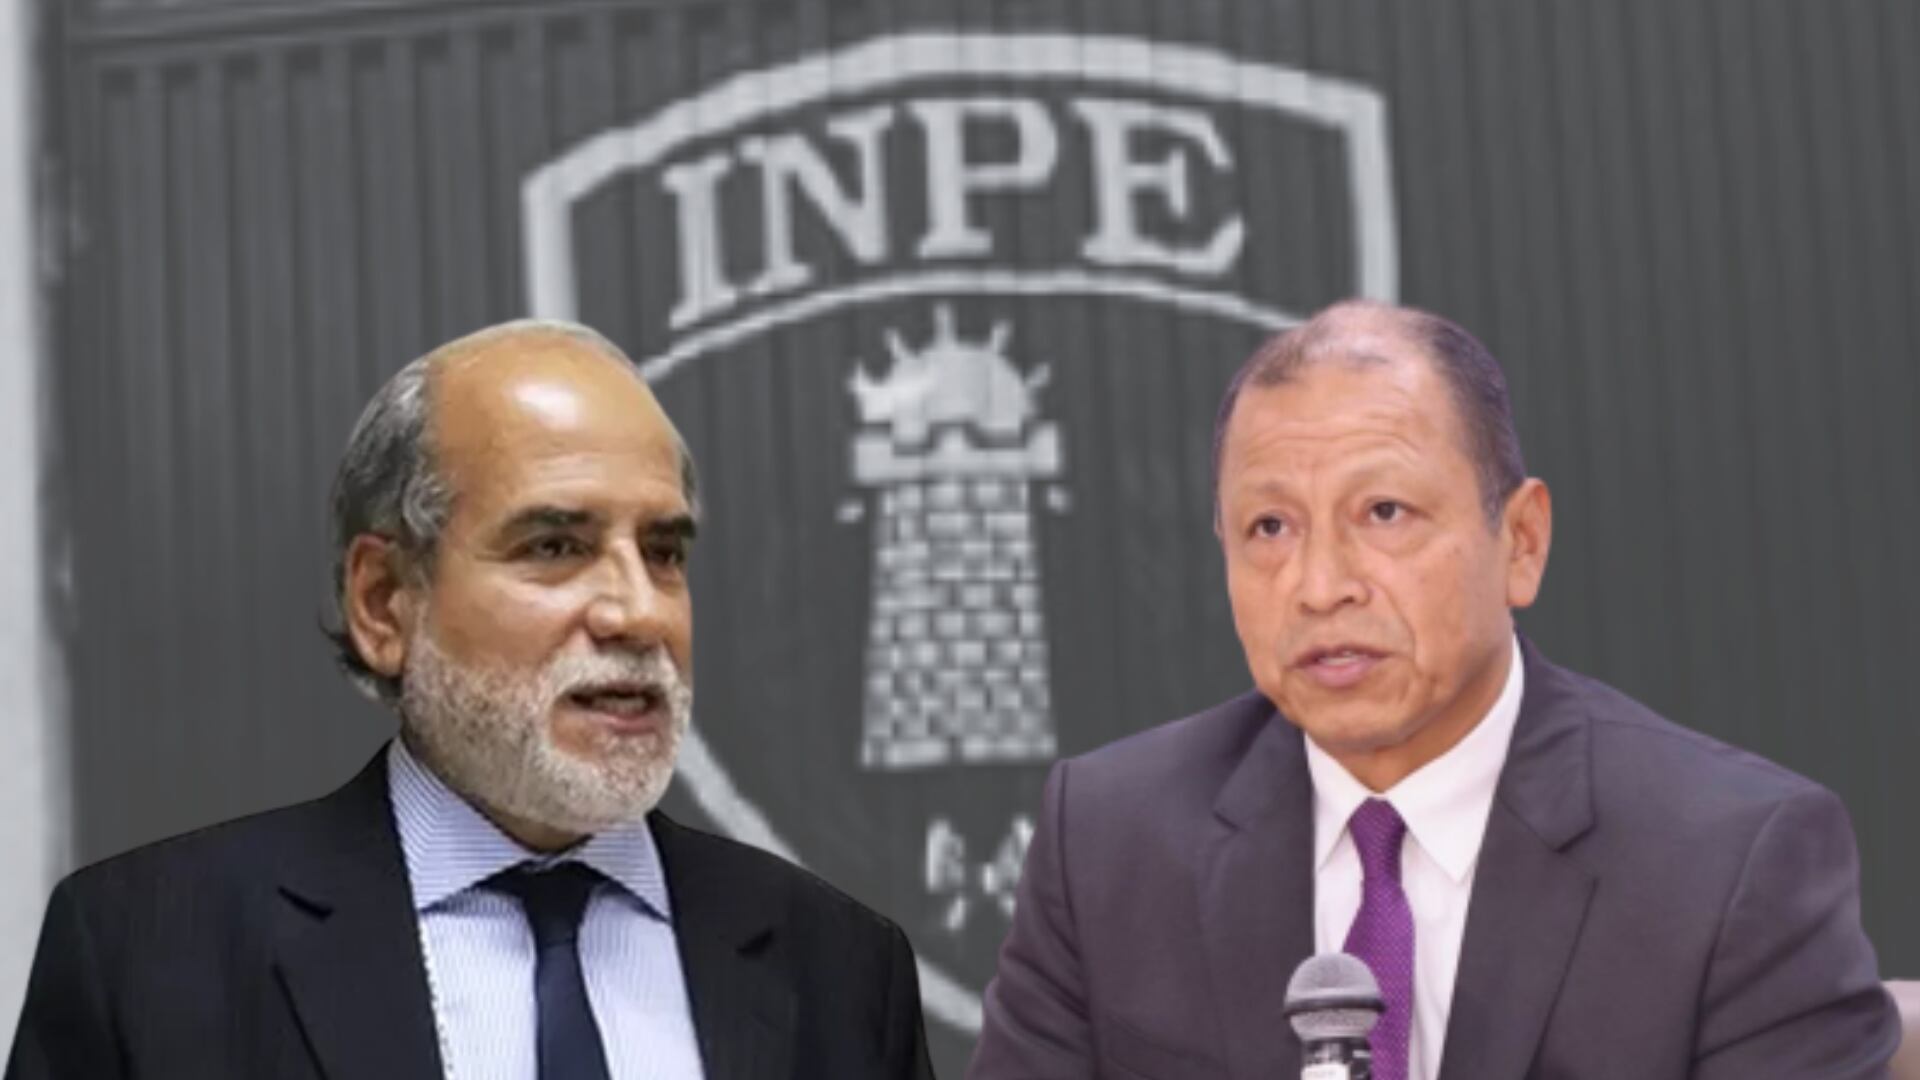 Jefe del INPE no renunciará pese a reestructuración de institución, anunciada por el ministro de Justicia